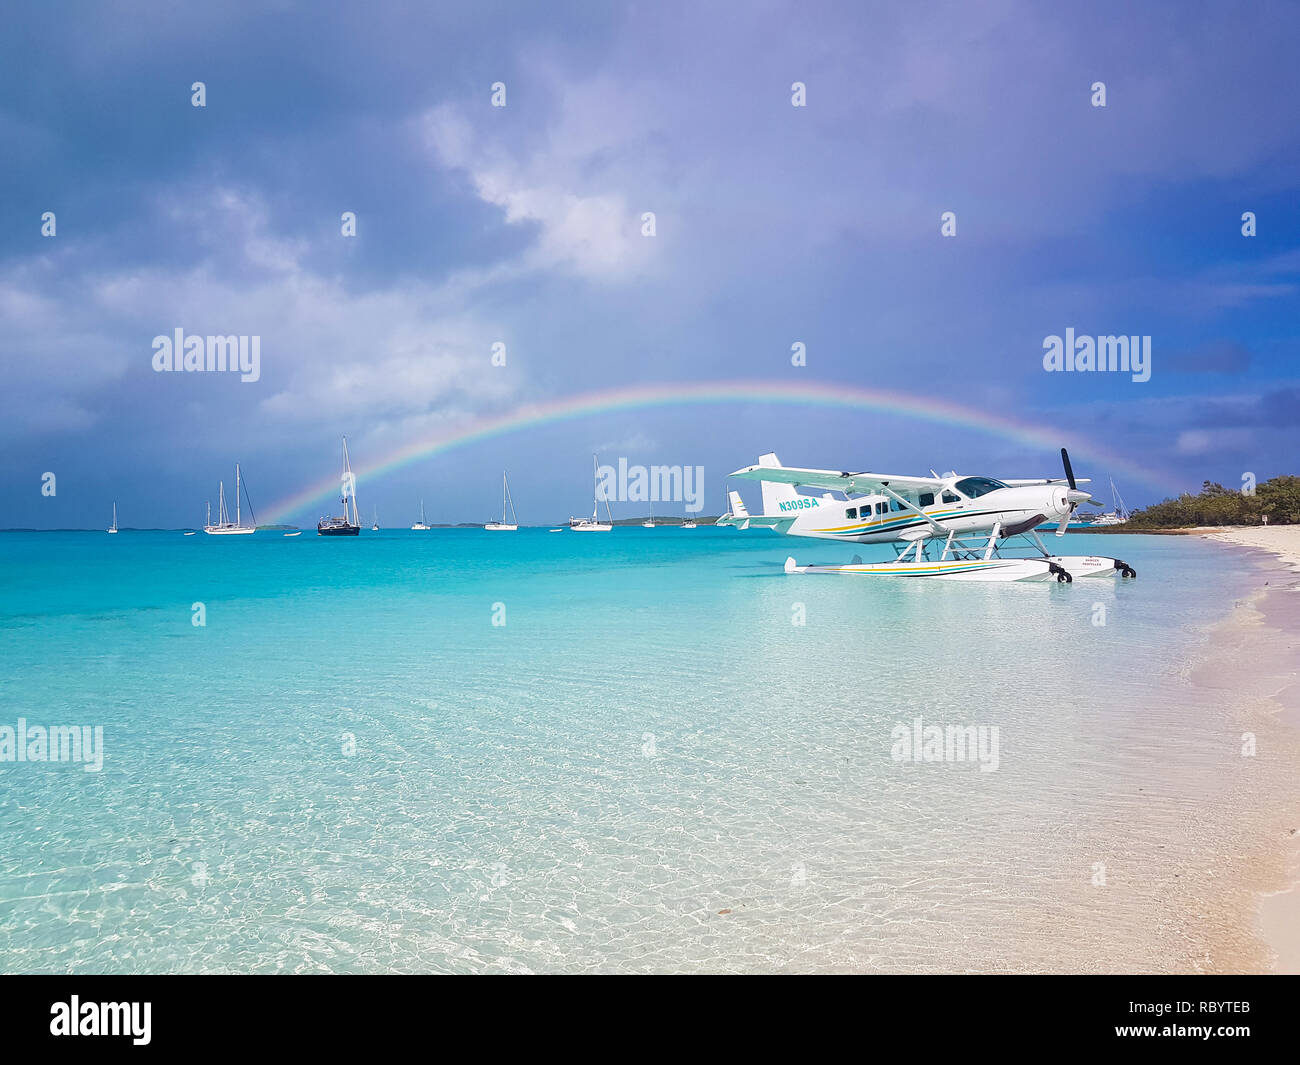 Sea Plane landed in Exuma, Bahamas Stock Photo